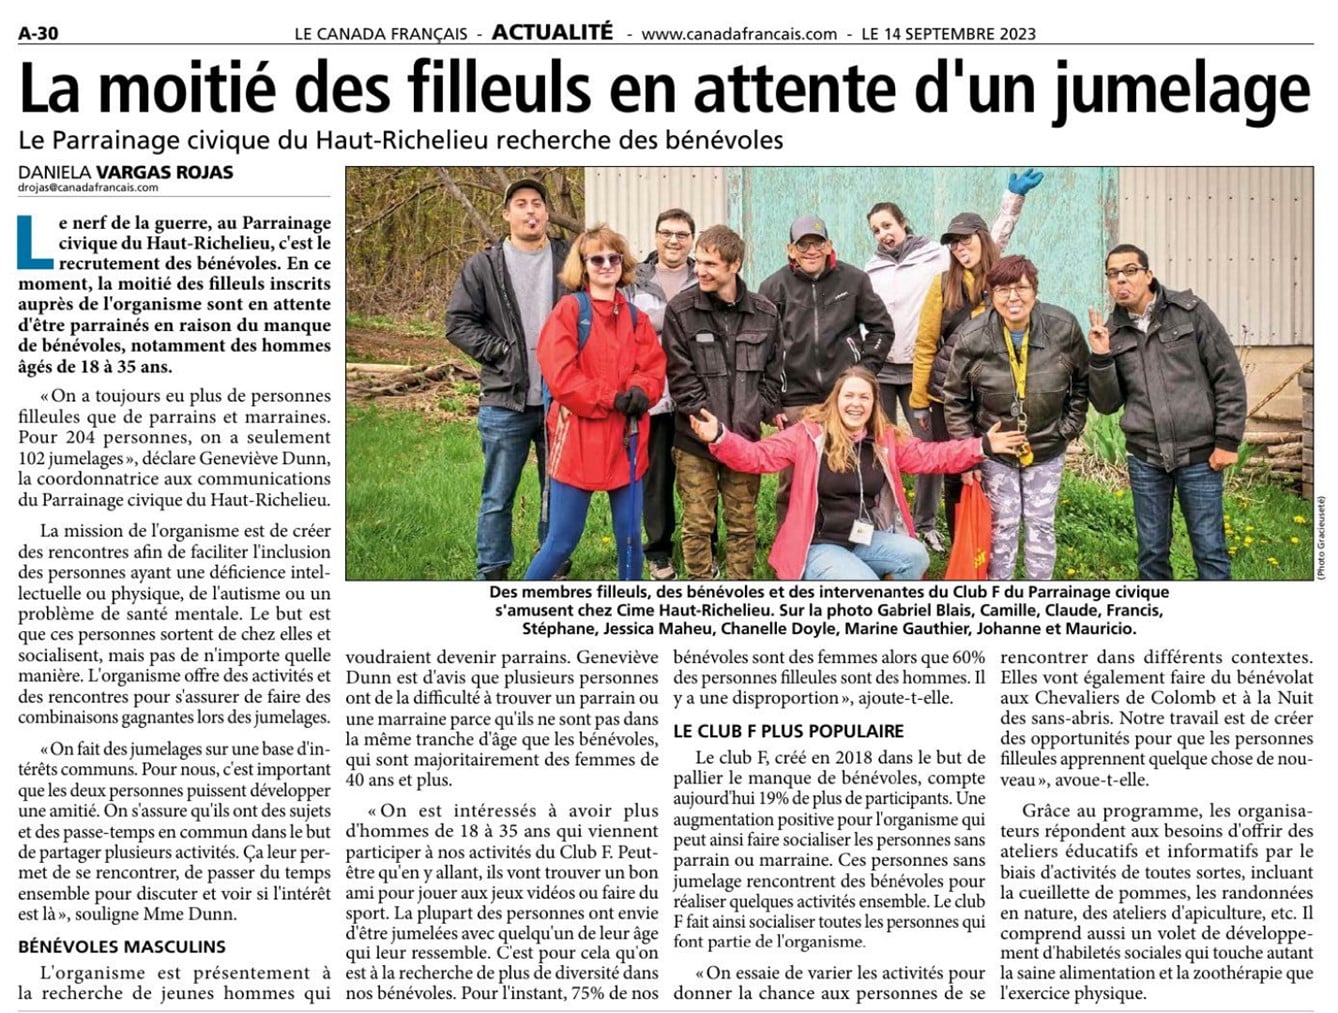 le parrainage civique cherche des bénévoles à saint-jean-sur-richelieu